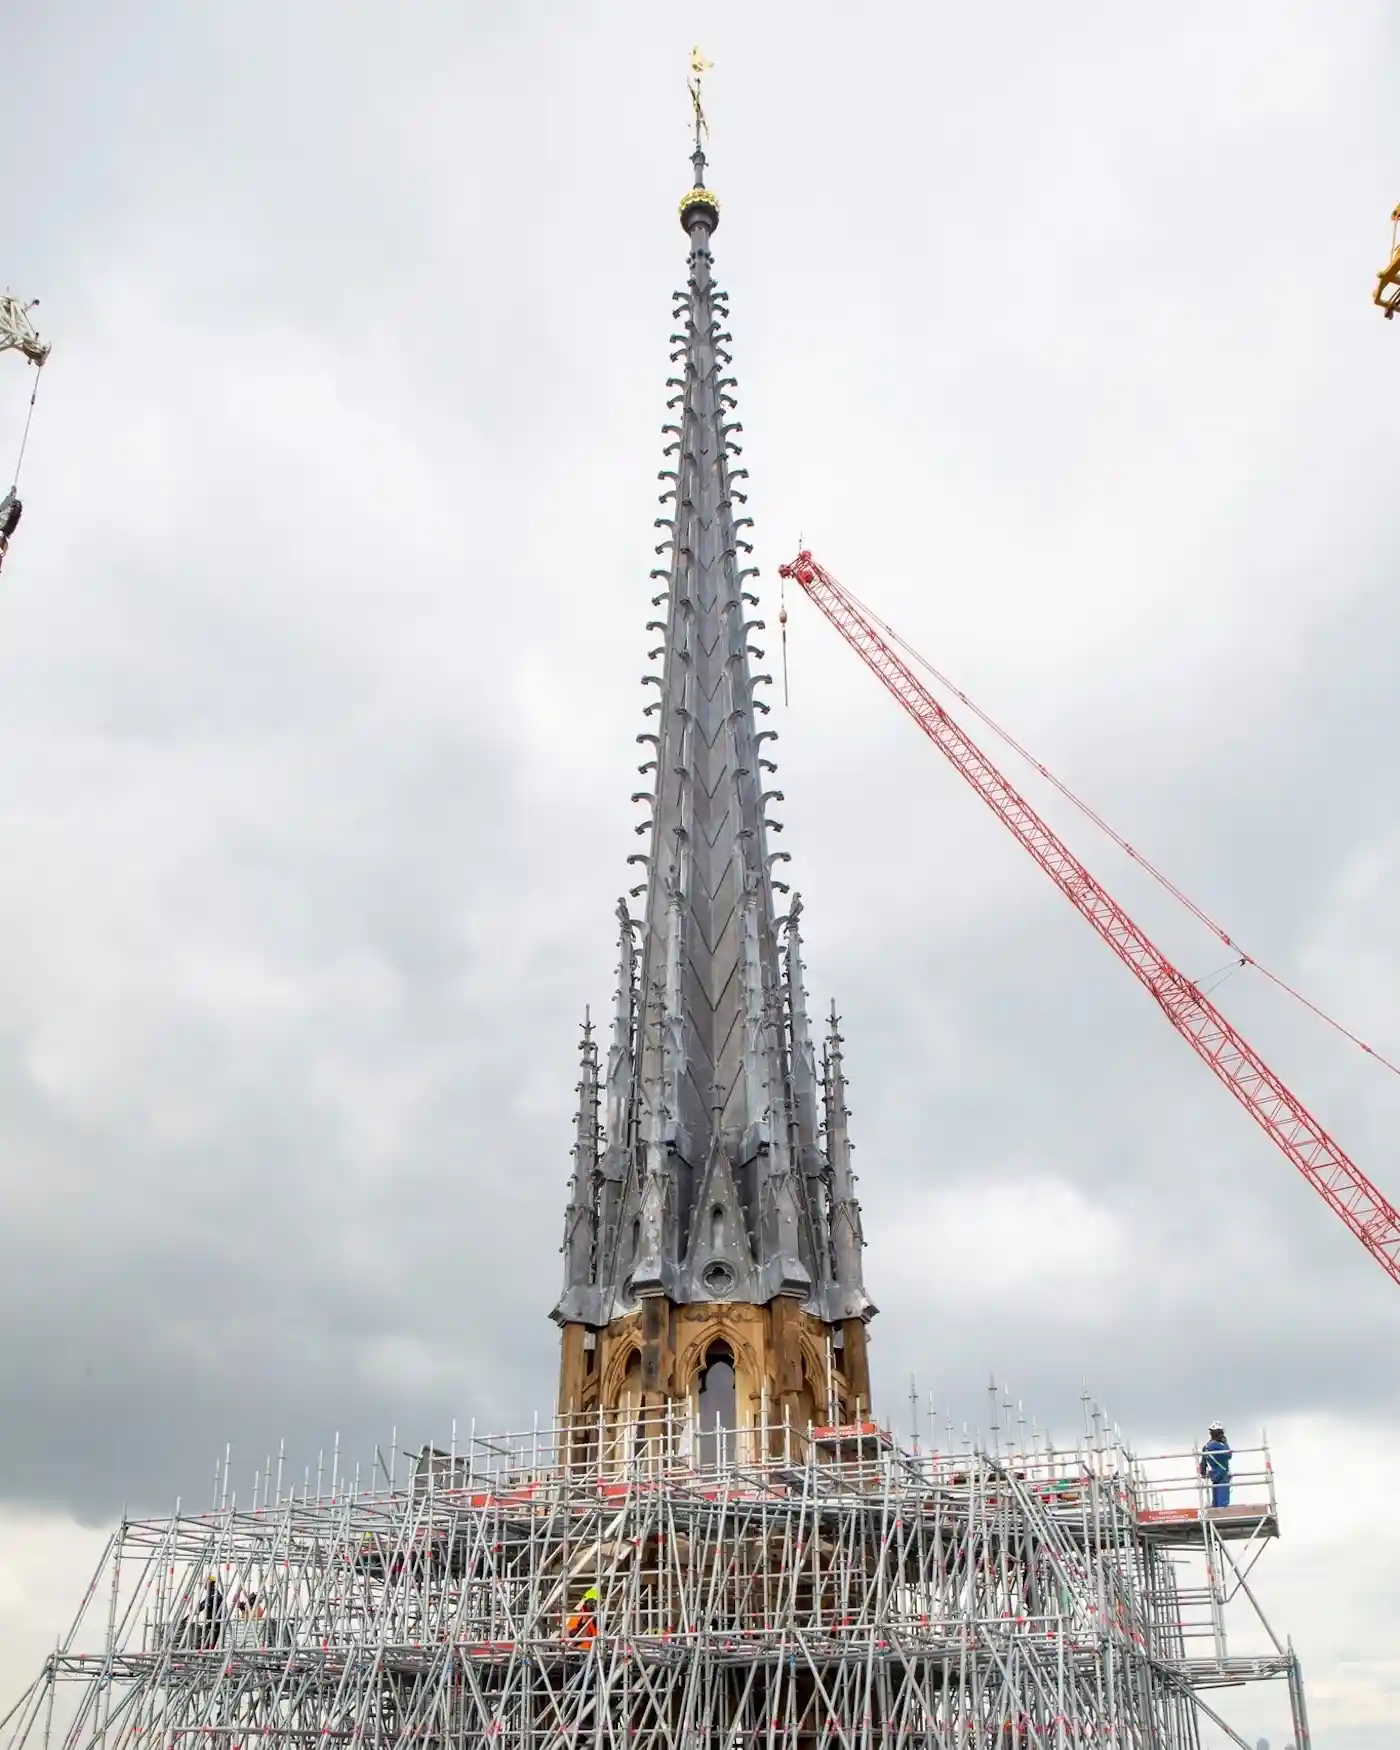 ¿Cuándo inaugura la catedral de Notre-Dame? Avanzan las obras